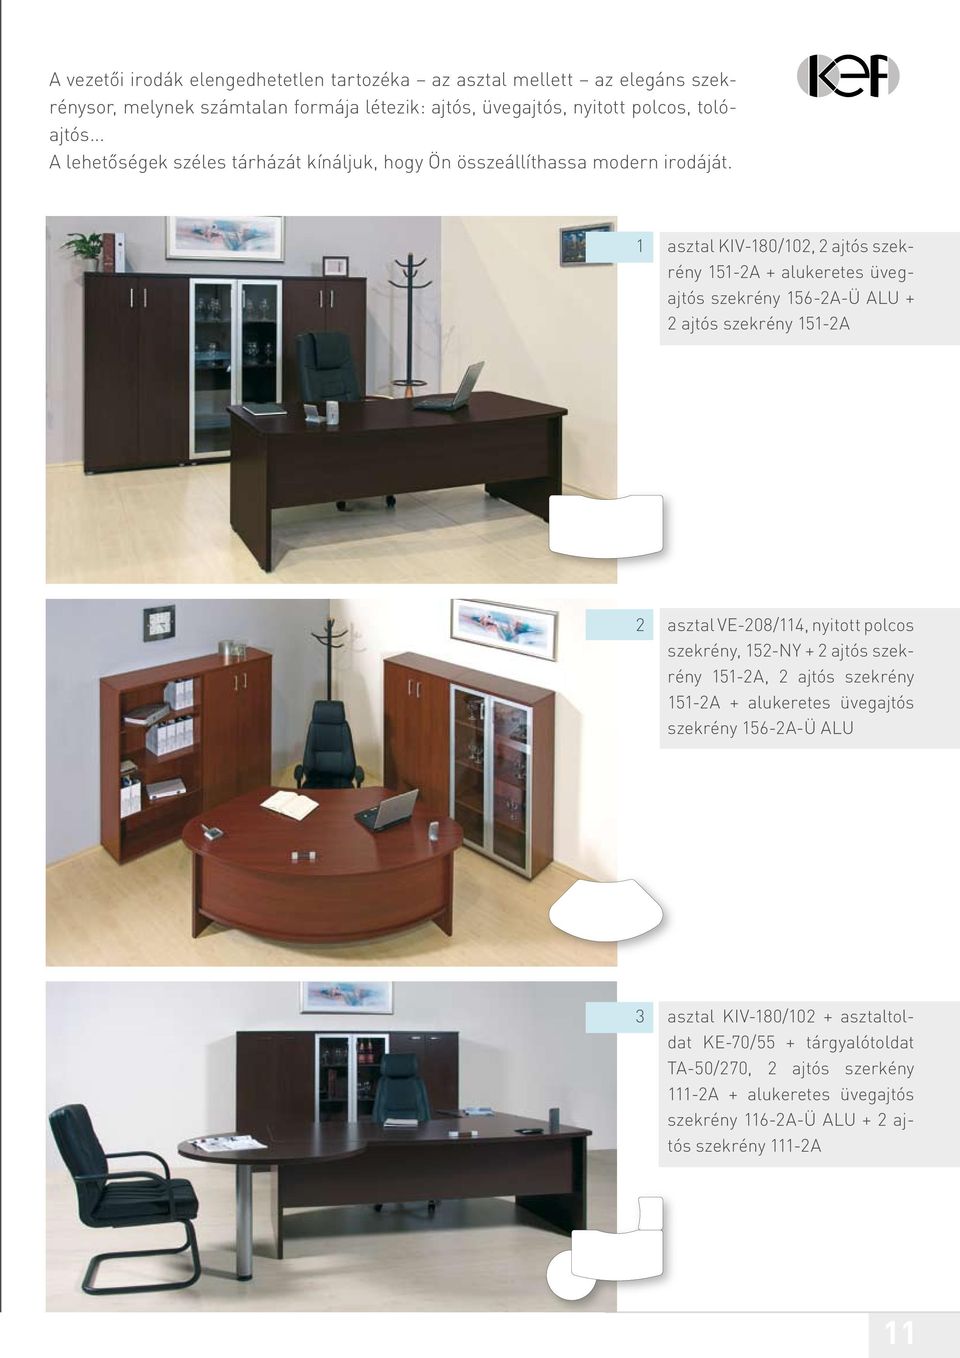 1 asztal KIV-180/102, 2 ajtós szekrény 151-2A + alukeretes üvegajtós szekrény 156-2A-Ü ALU + 2 ajtós szekrény 151-2A 2 asztal VE-208/114, nyitott polcos szekrény, 152-NY